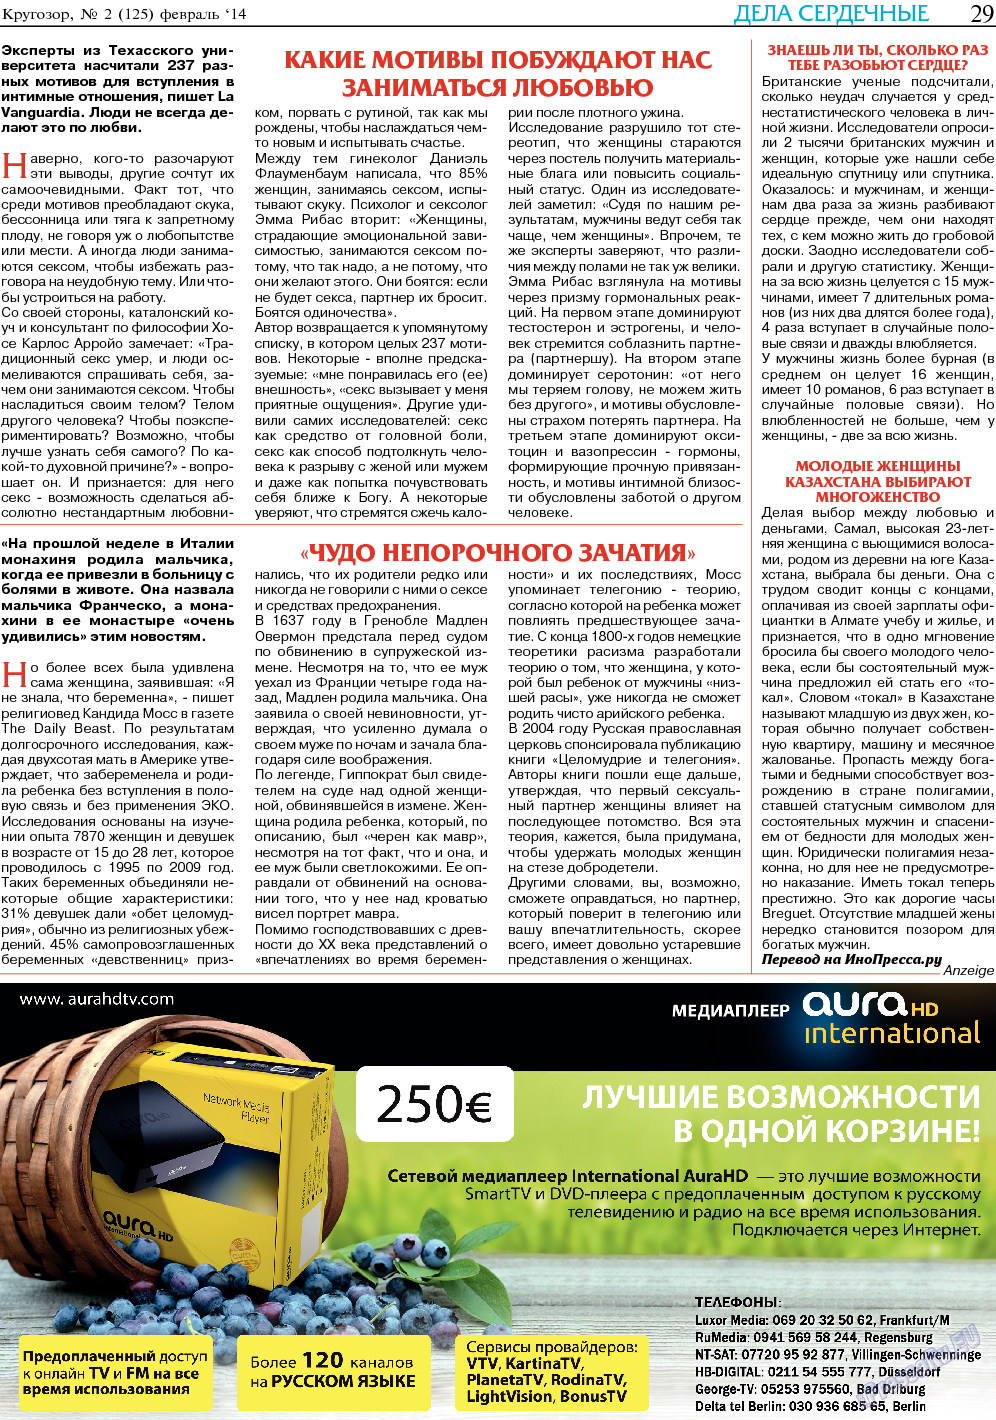 Кругозор, газета. 2014 №2 стр.29